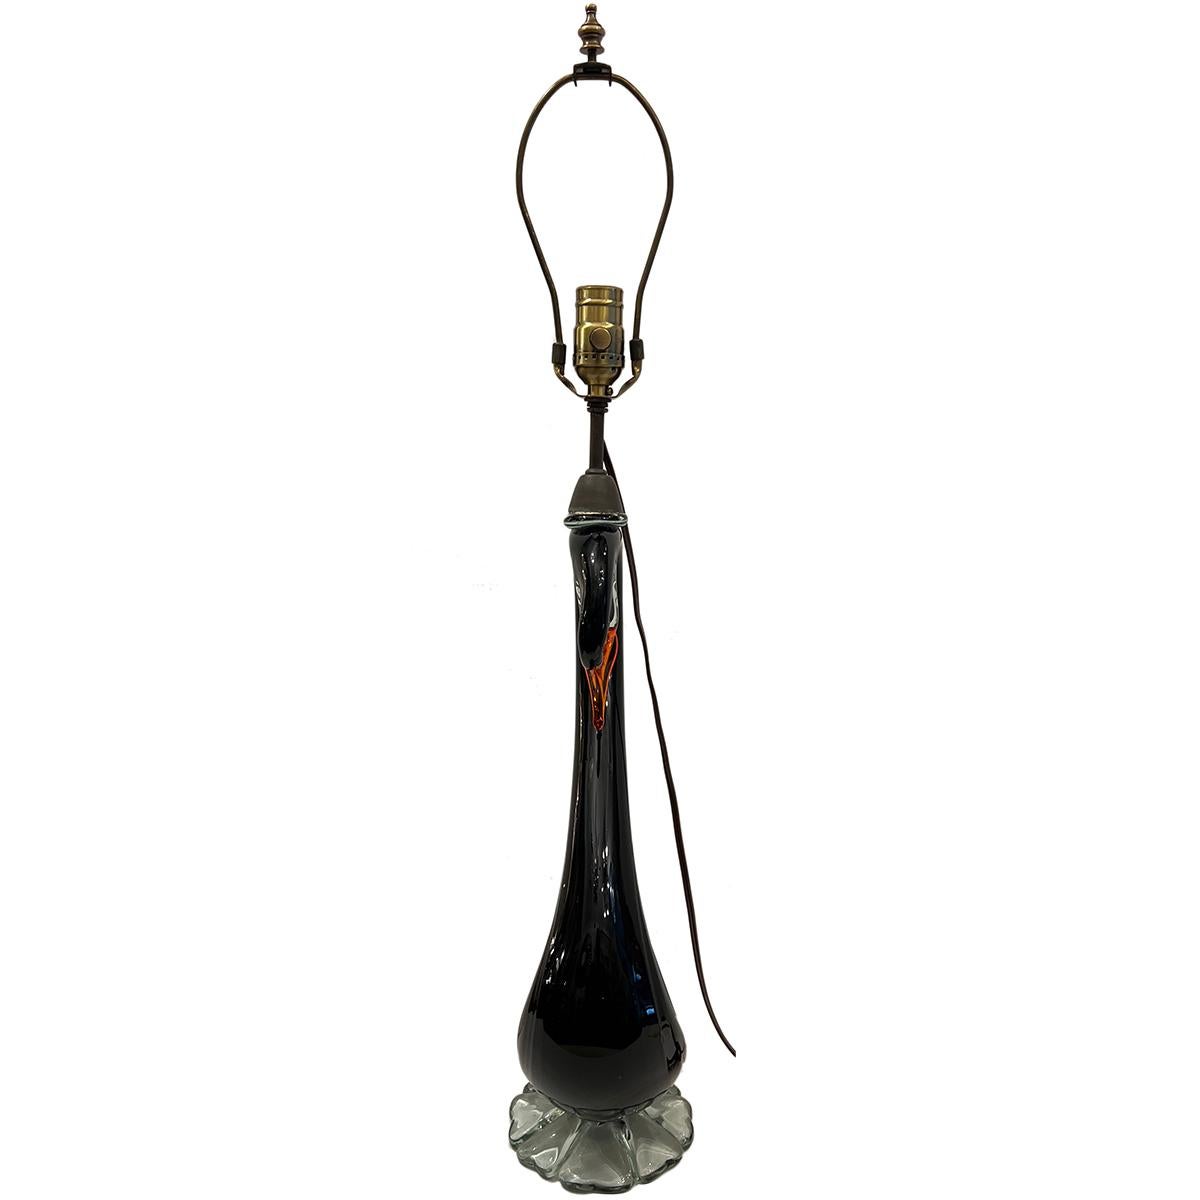 Lampe de table en forme de cygne en verre soufflé italien des années 1950.

Mesures :
Hauteur du corps : 20